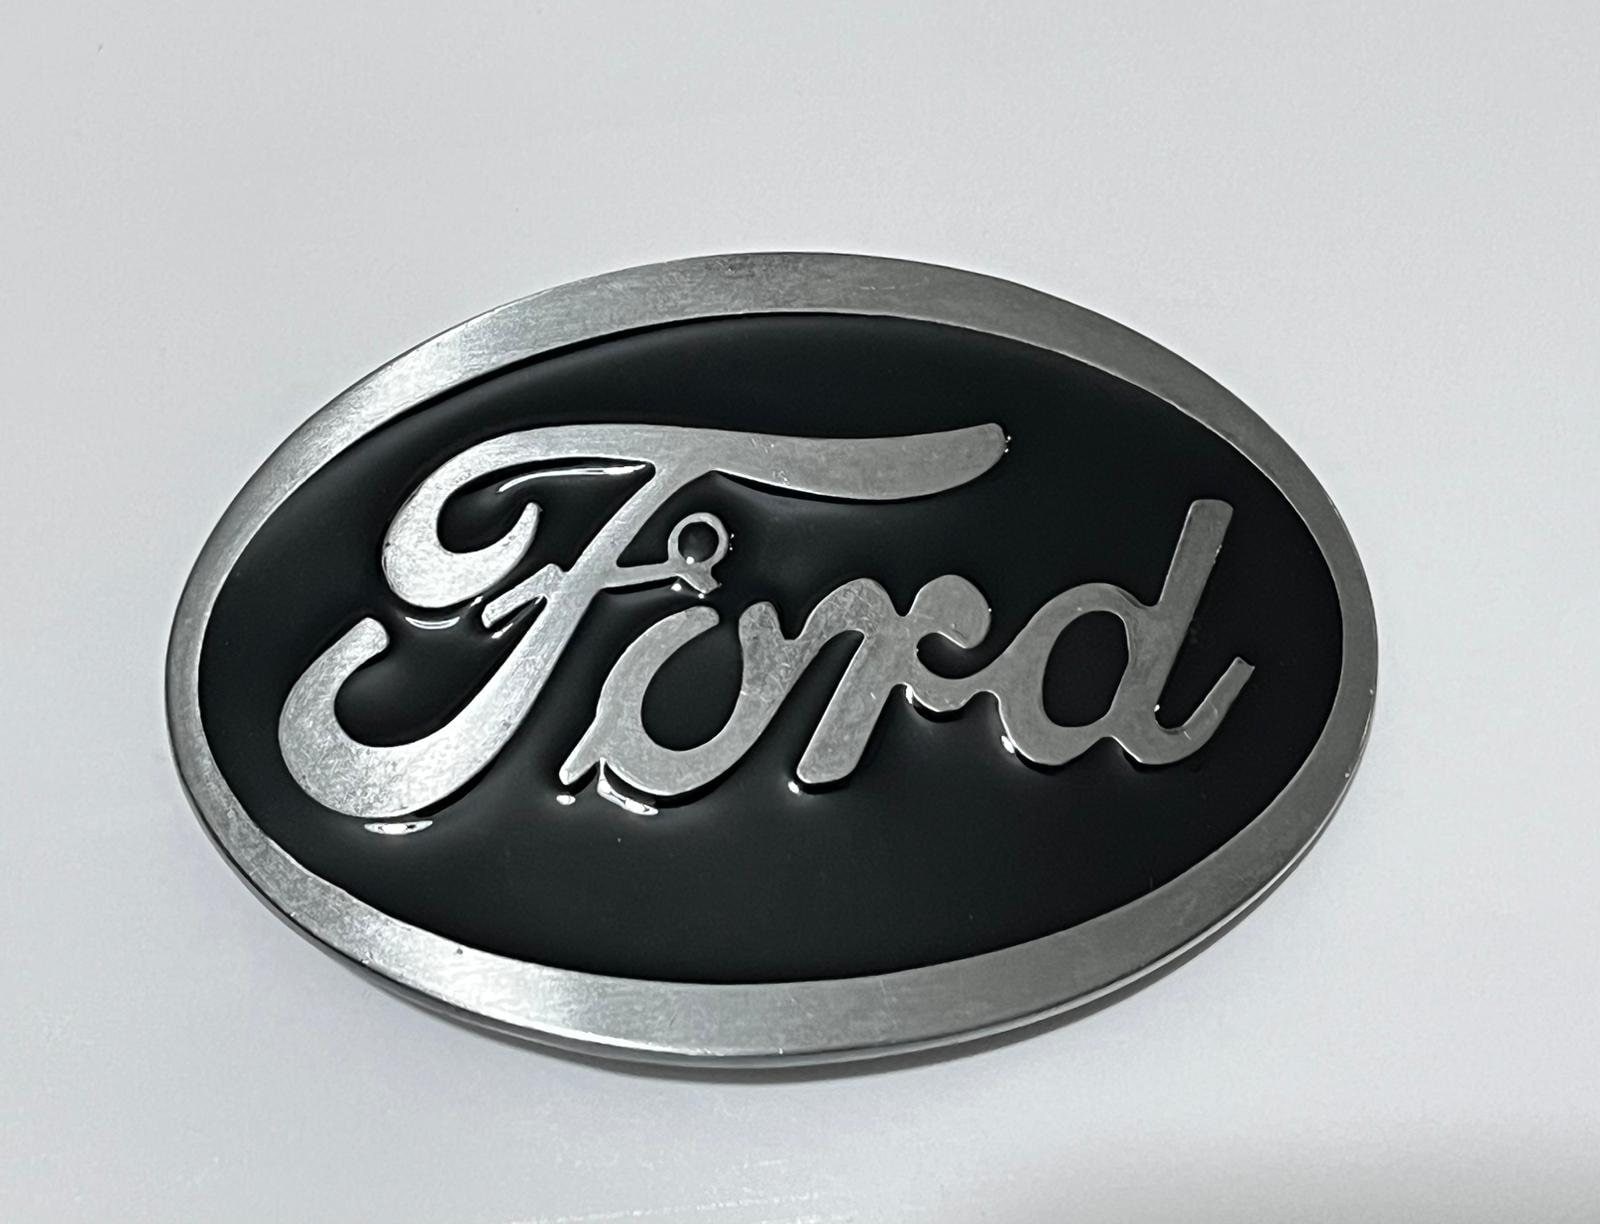 Ford Trucks Men's Logo Diamond Plate Belt Buckle- Official Ford Merchandise